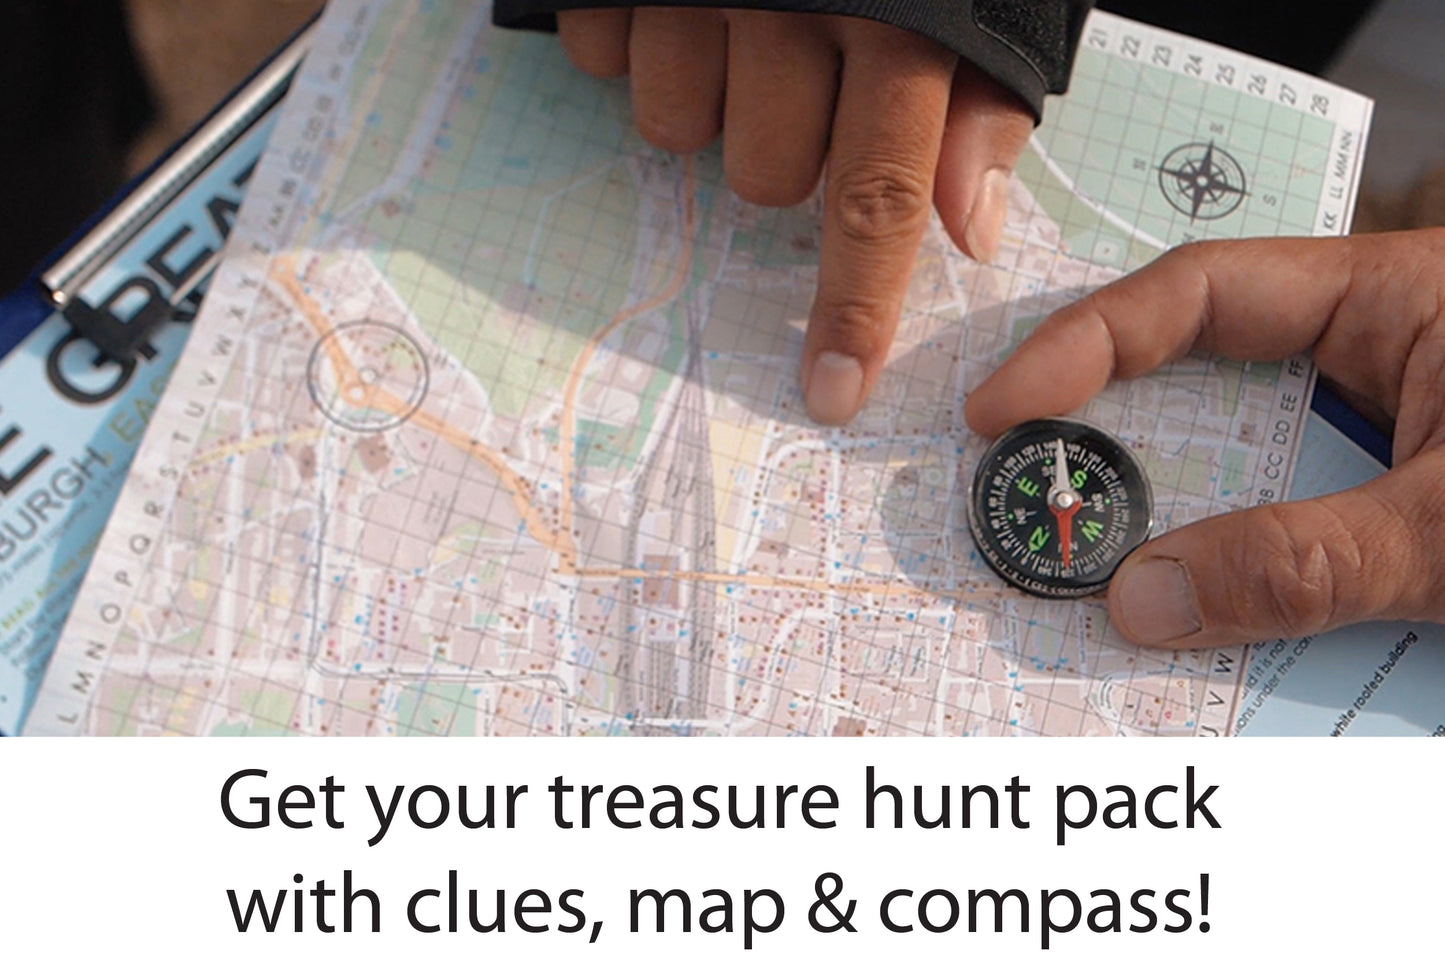 Oxford Treasure Hunt Original Route